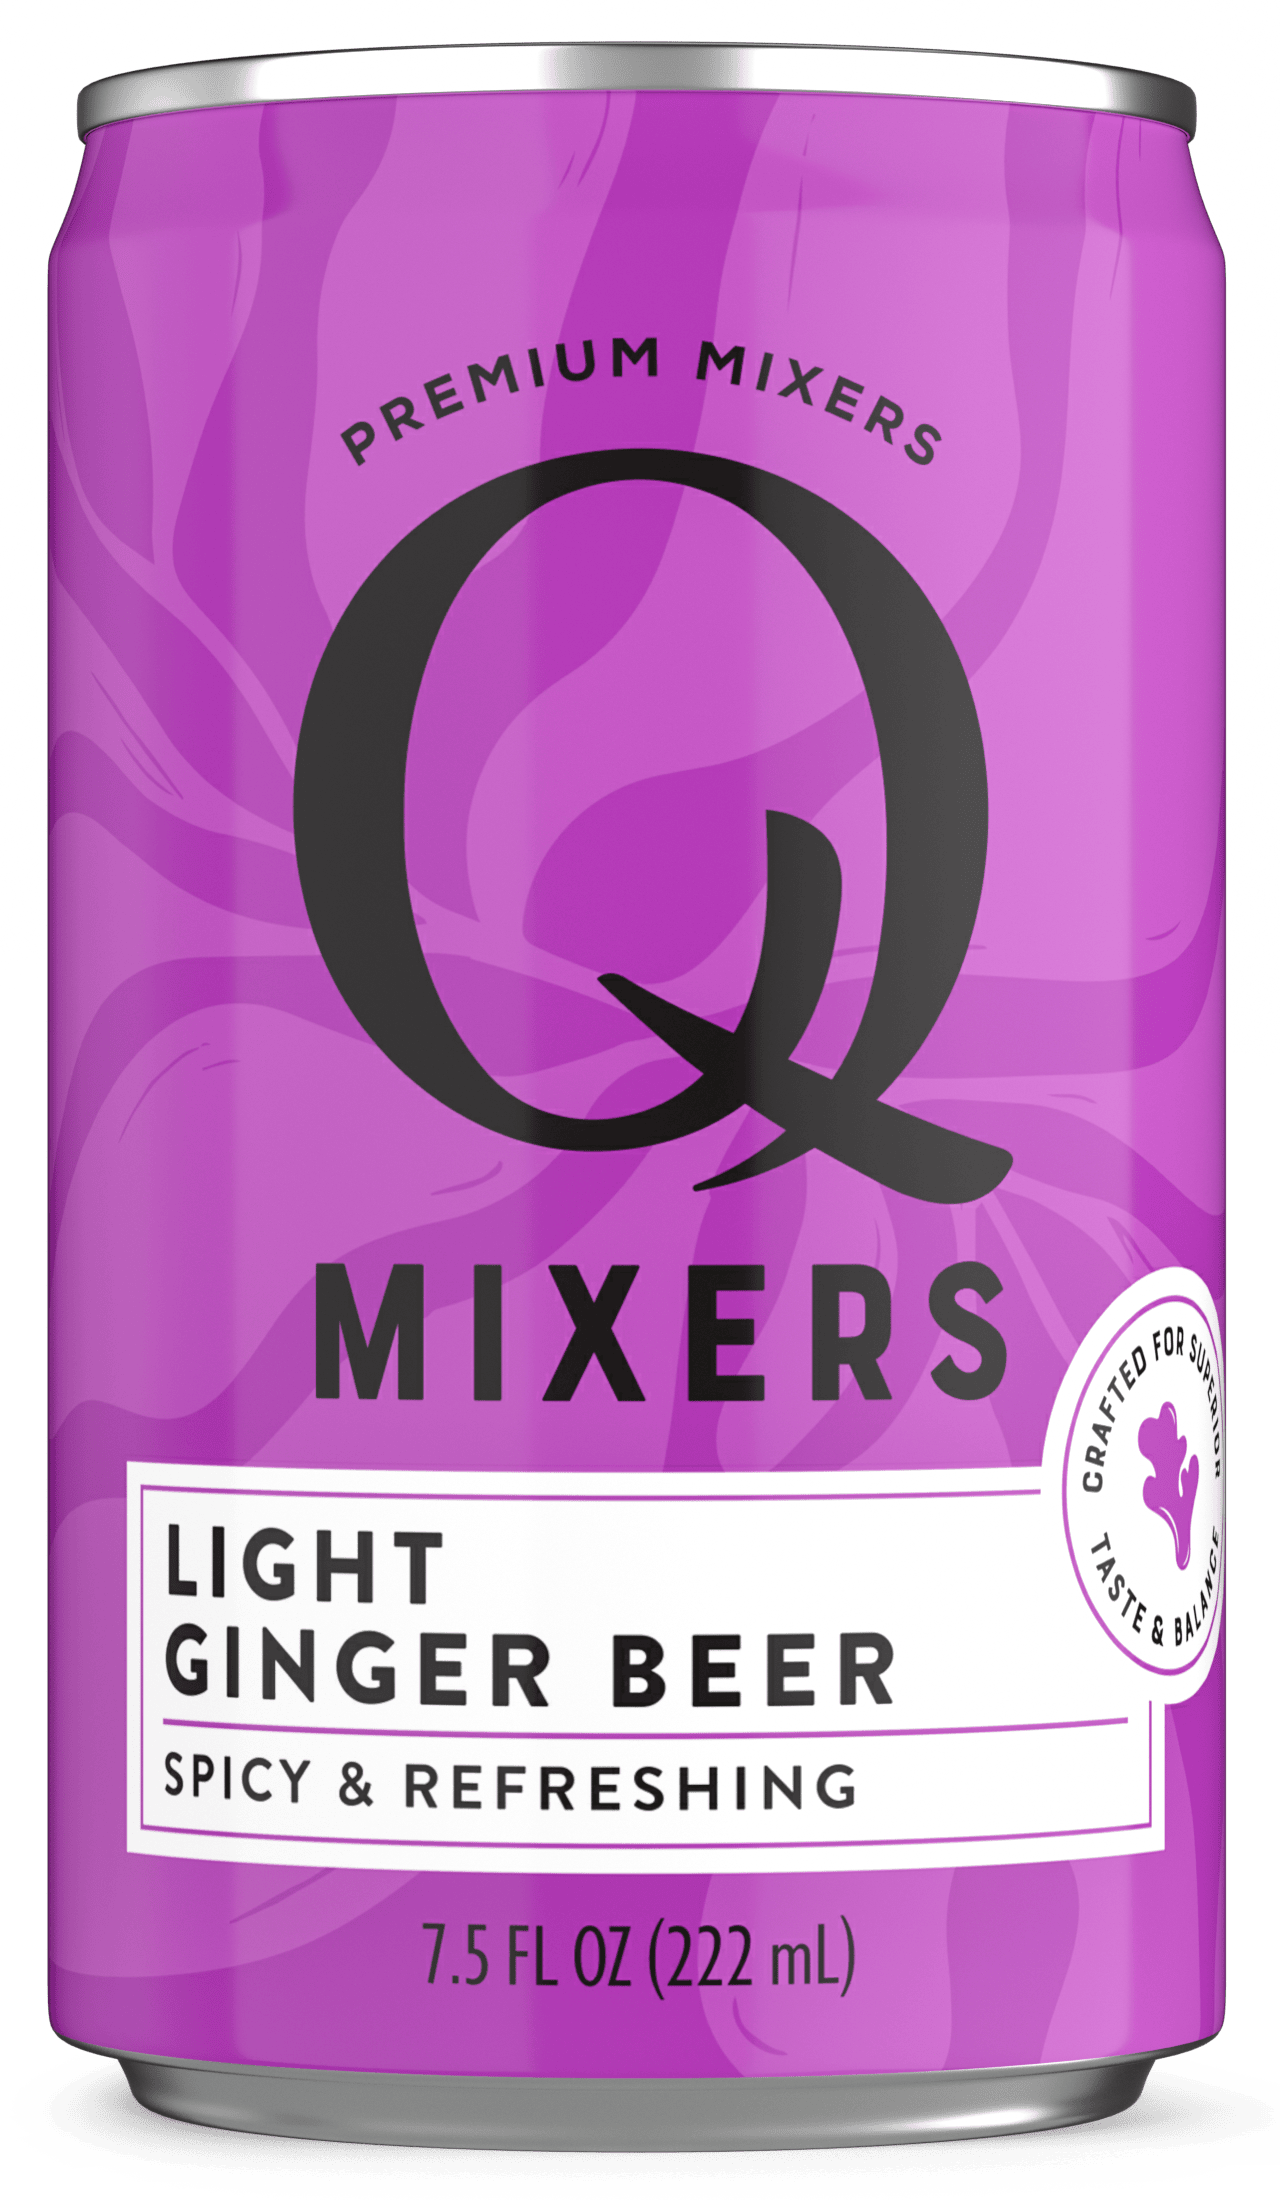 Light Ginger Beer